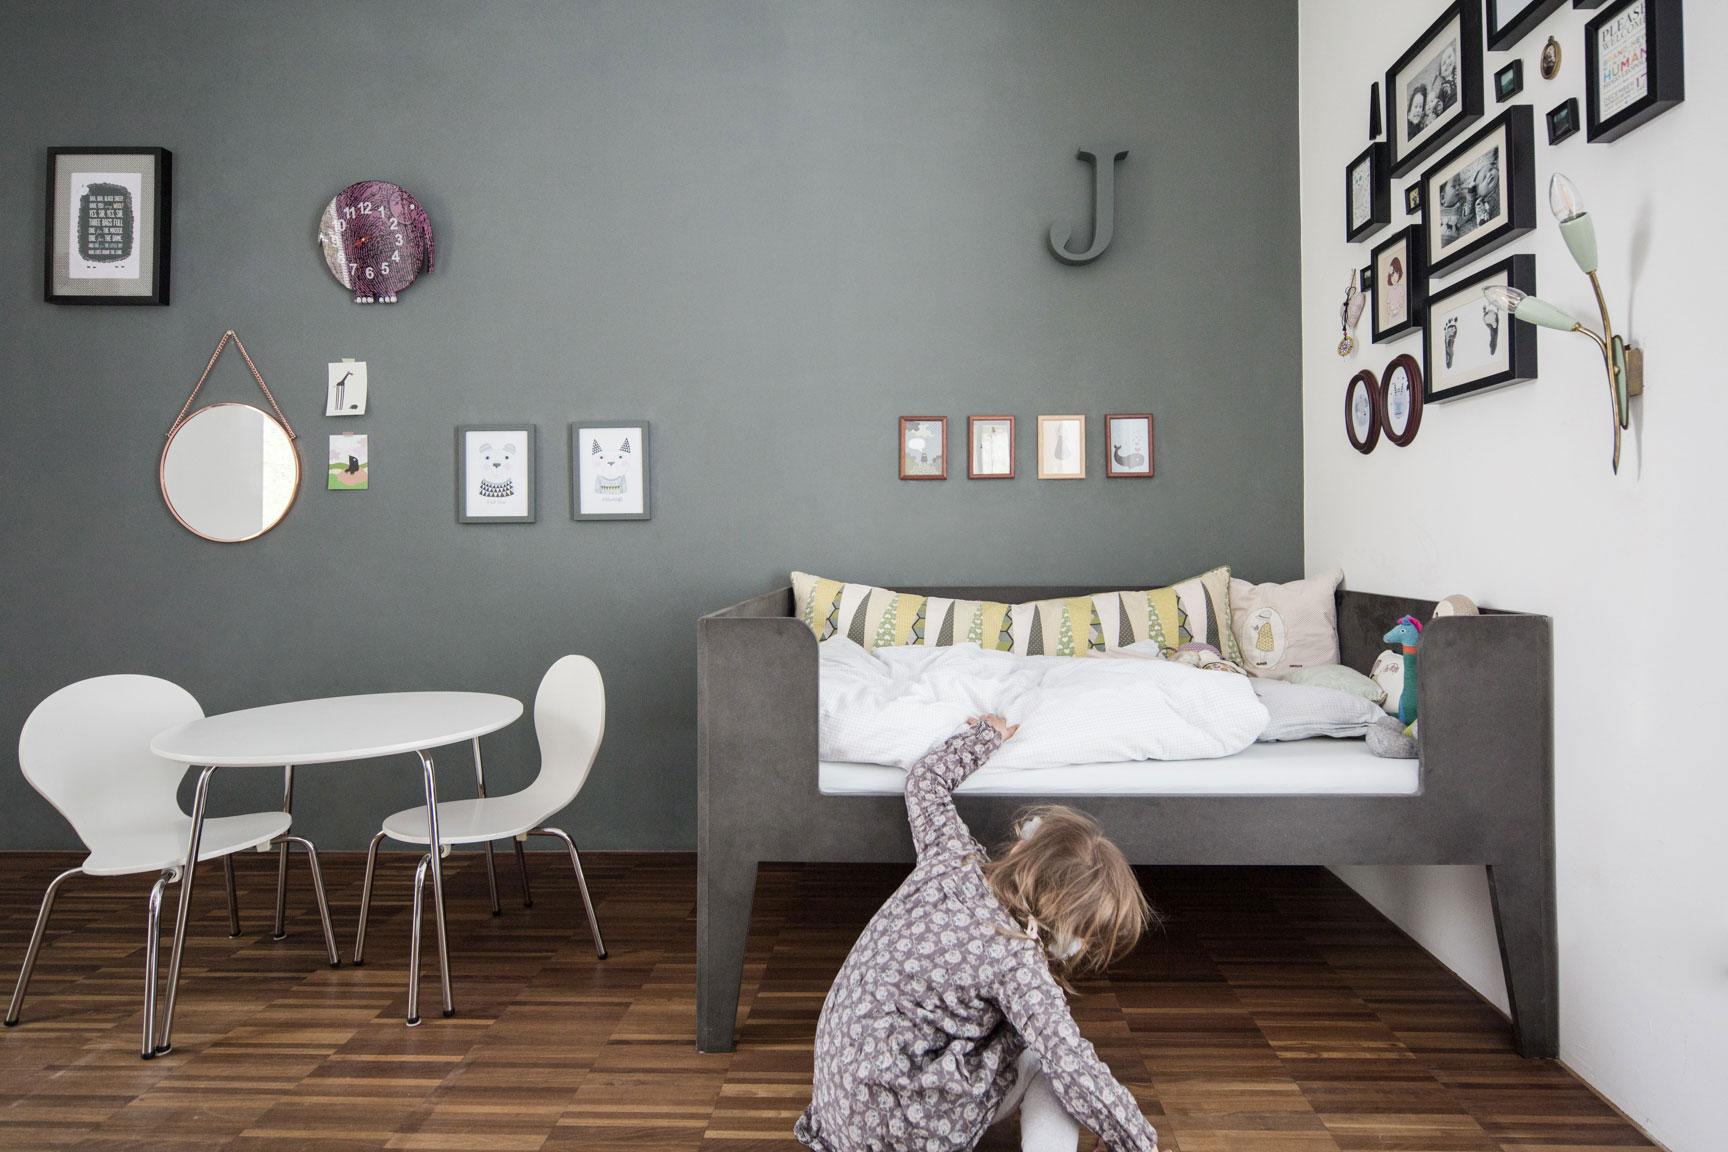 Kinderzimmer | Bett aus schwarzem MDF #kinderbett ©Heike Schwarzfischer | Alexey Testov